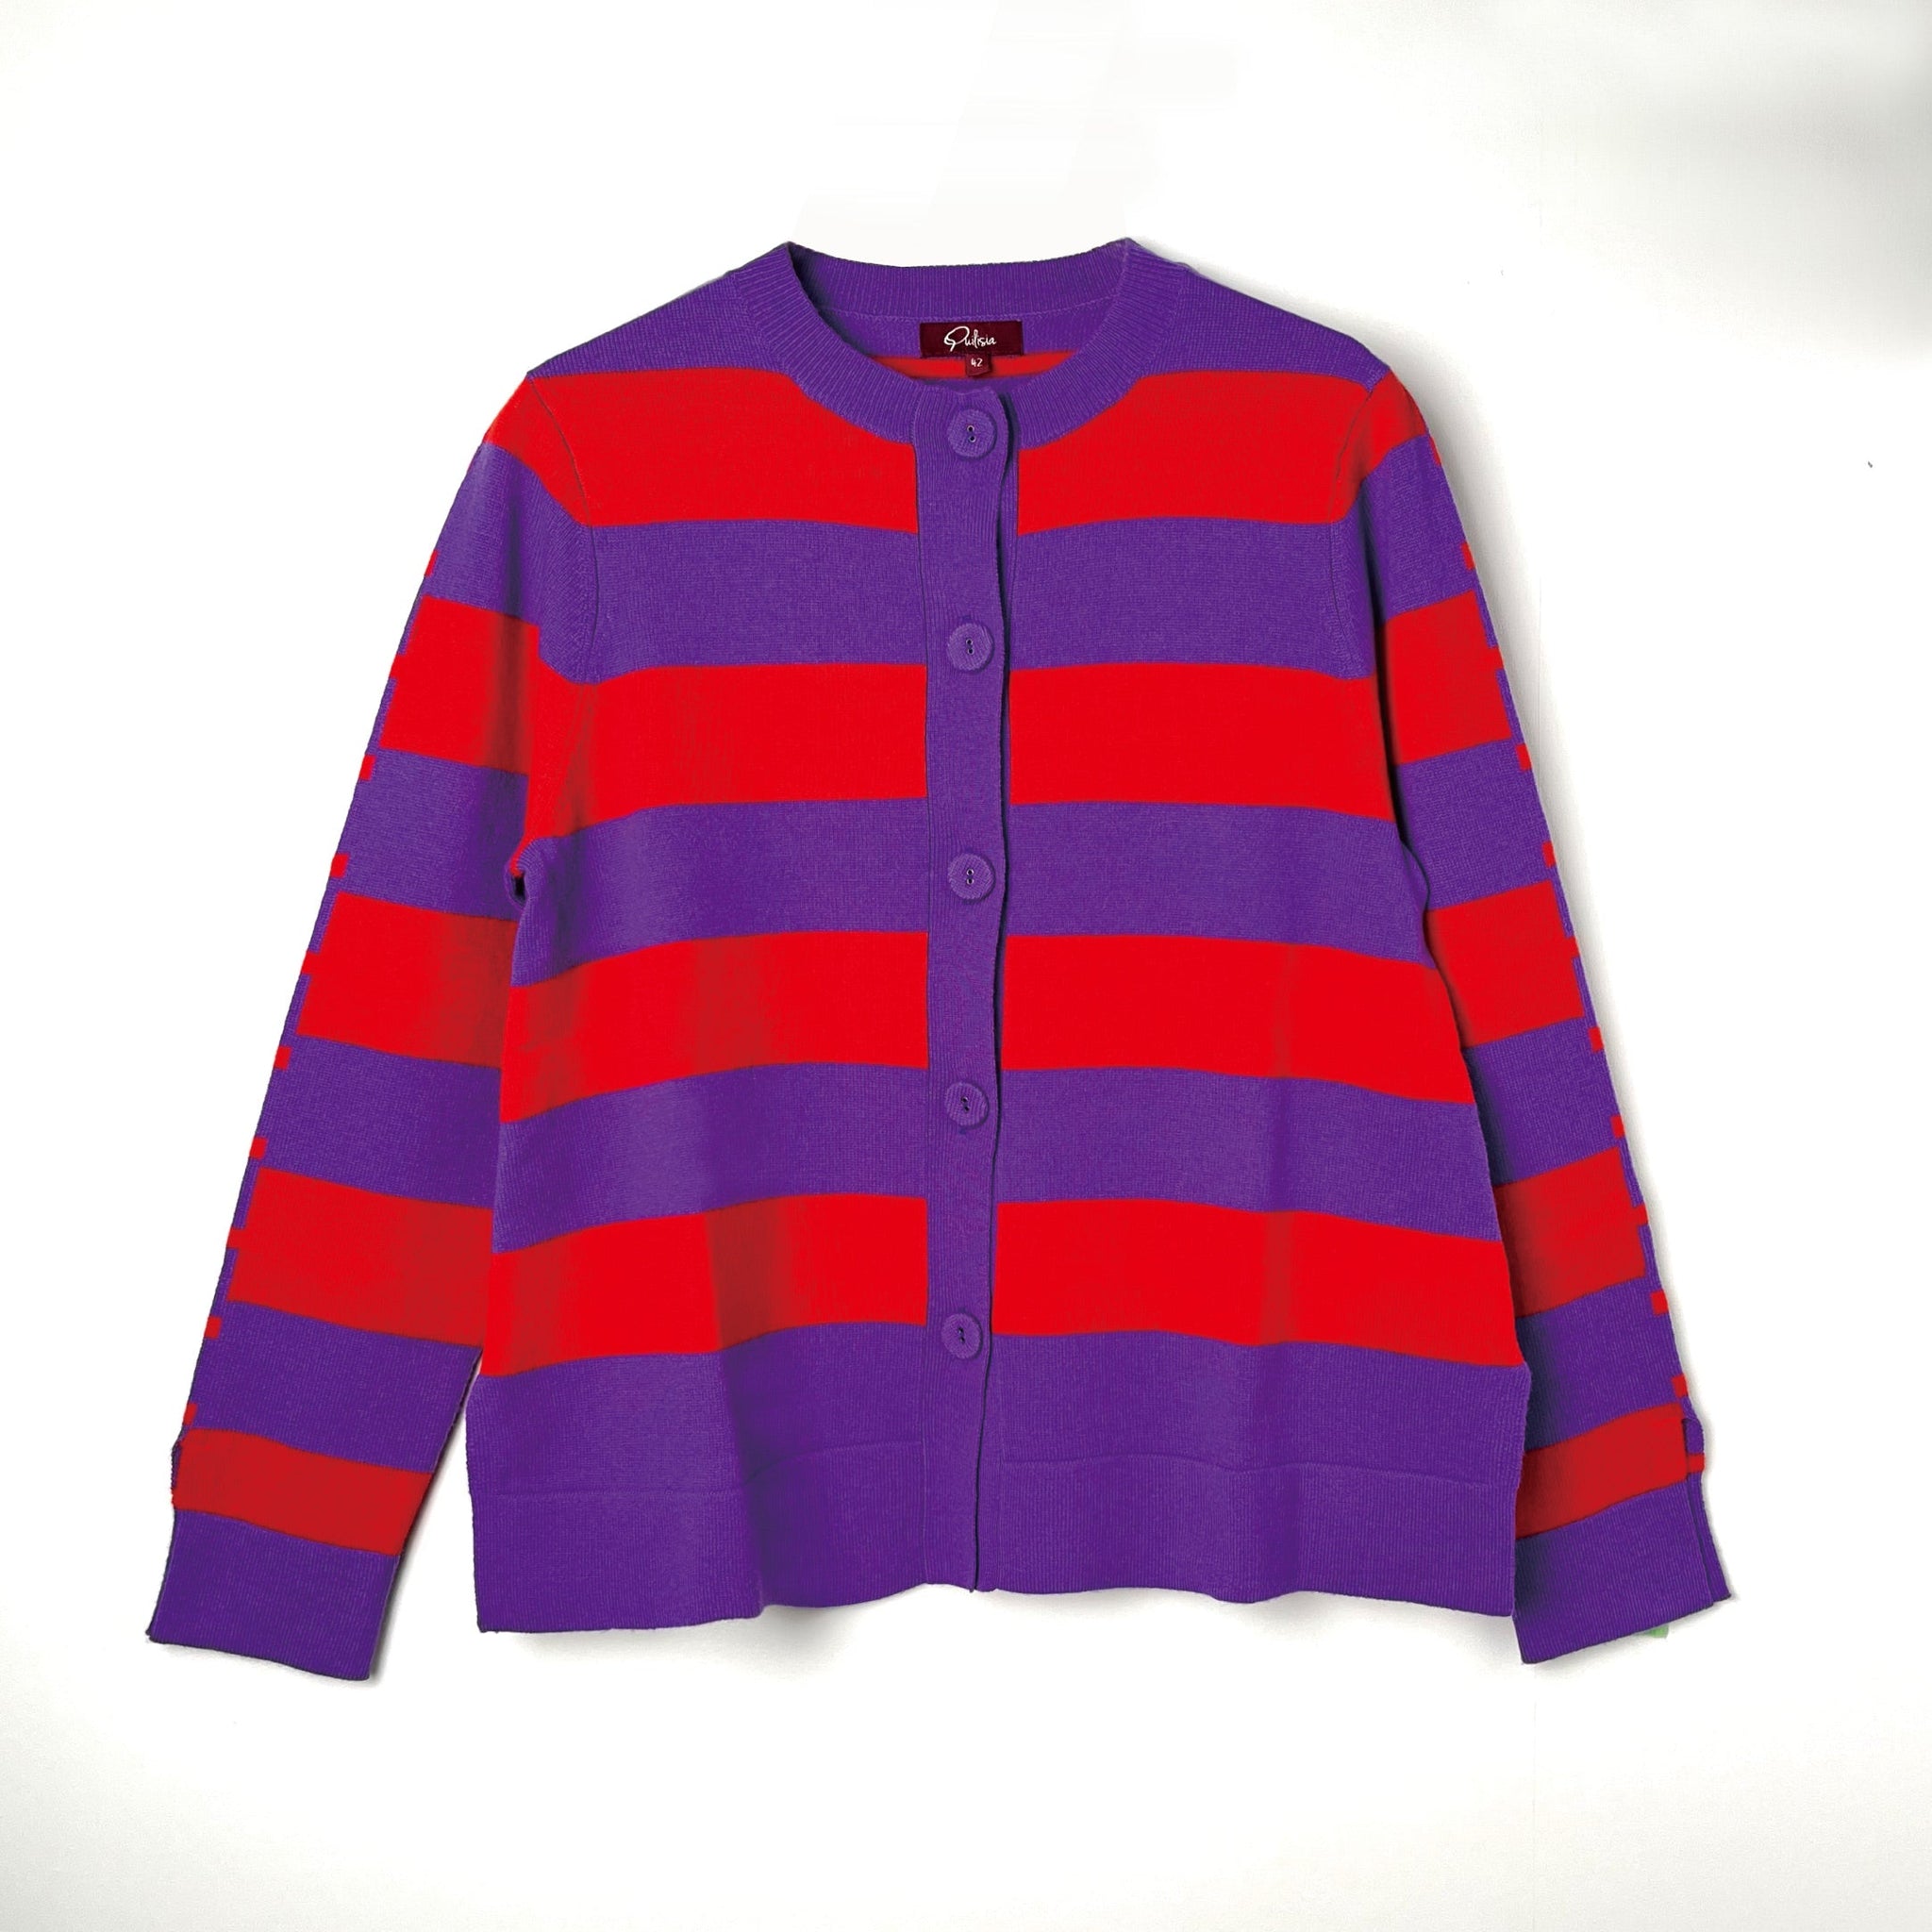 【22AW SALE 商品】Striped Knit Cardigan